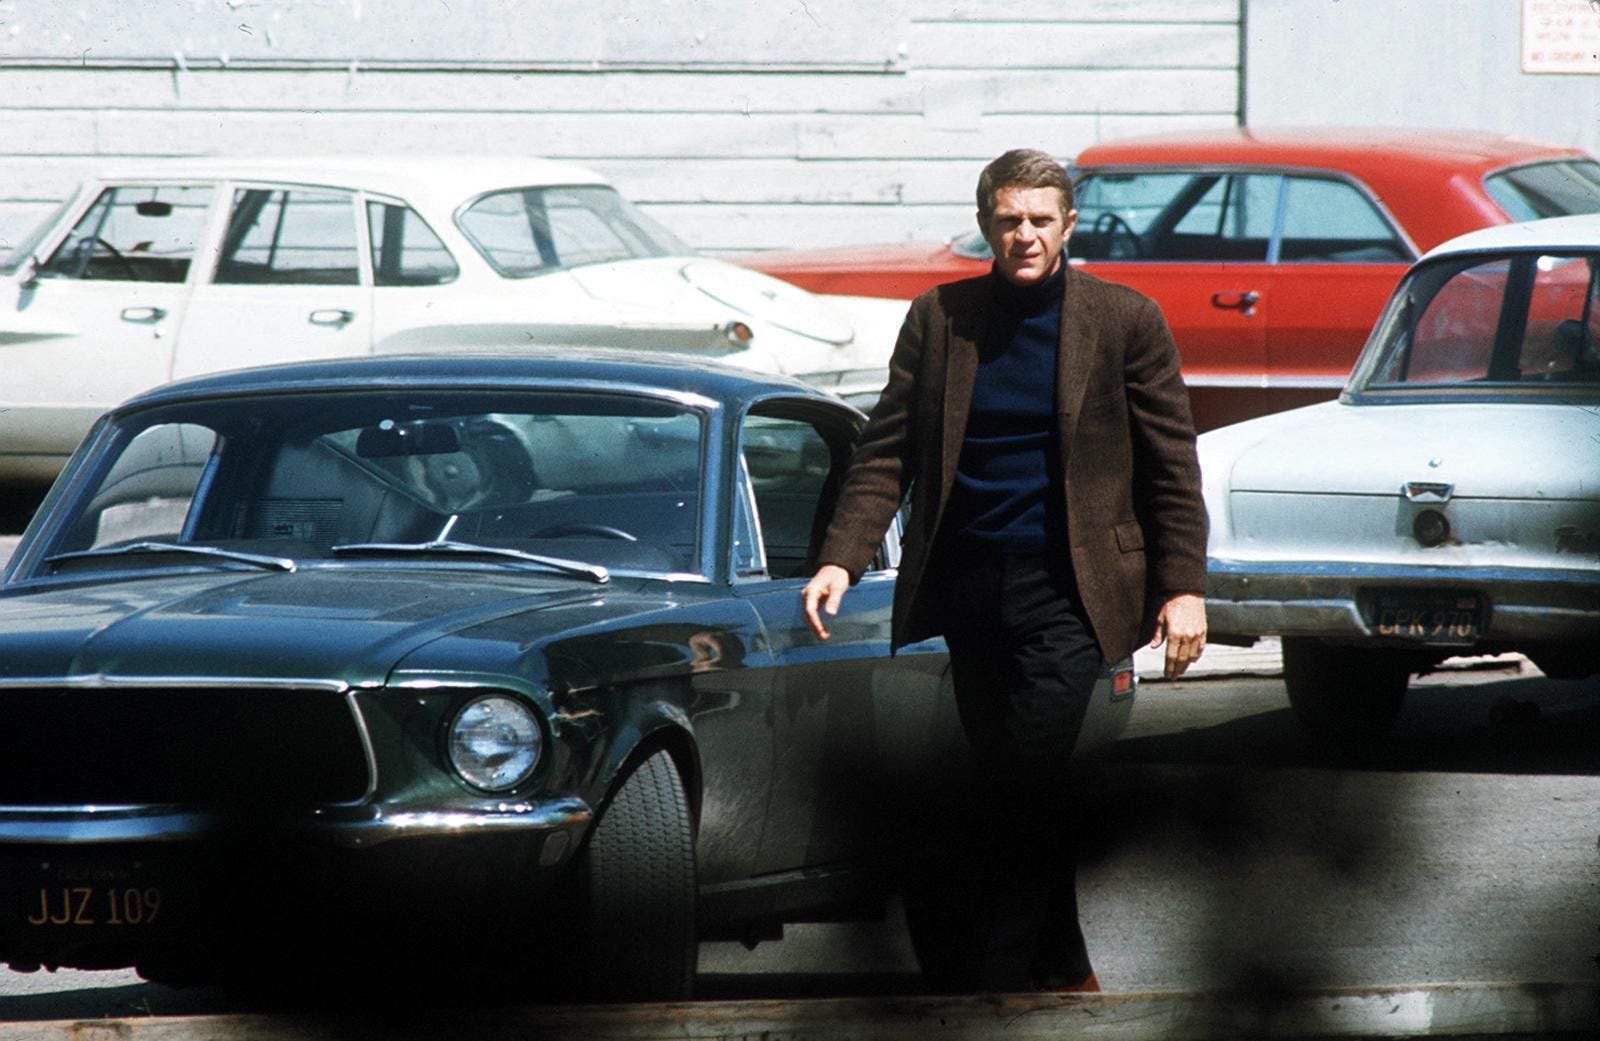 1968 'Bullitt' Mustang driven by Steve McQueen going to auction